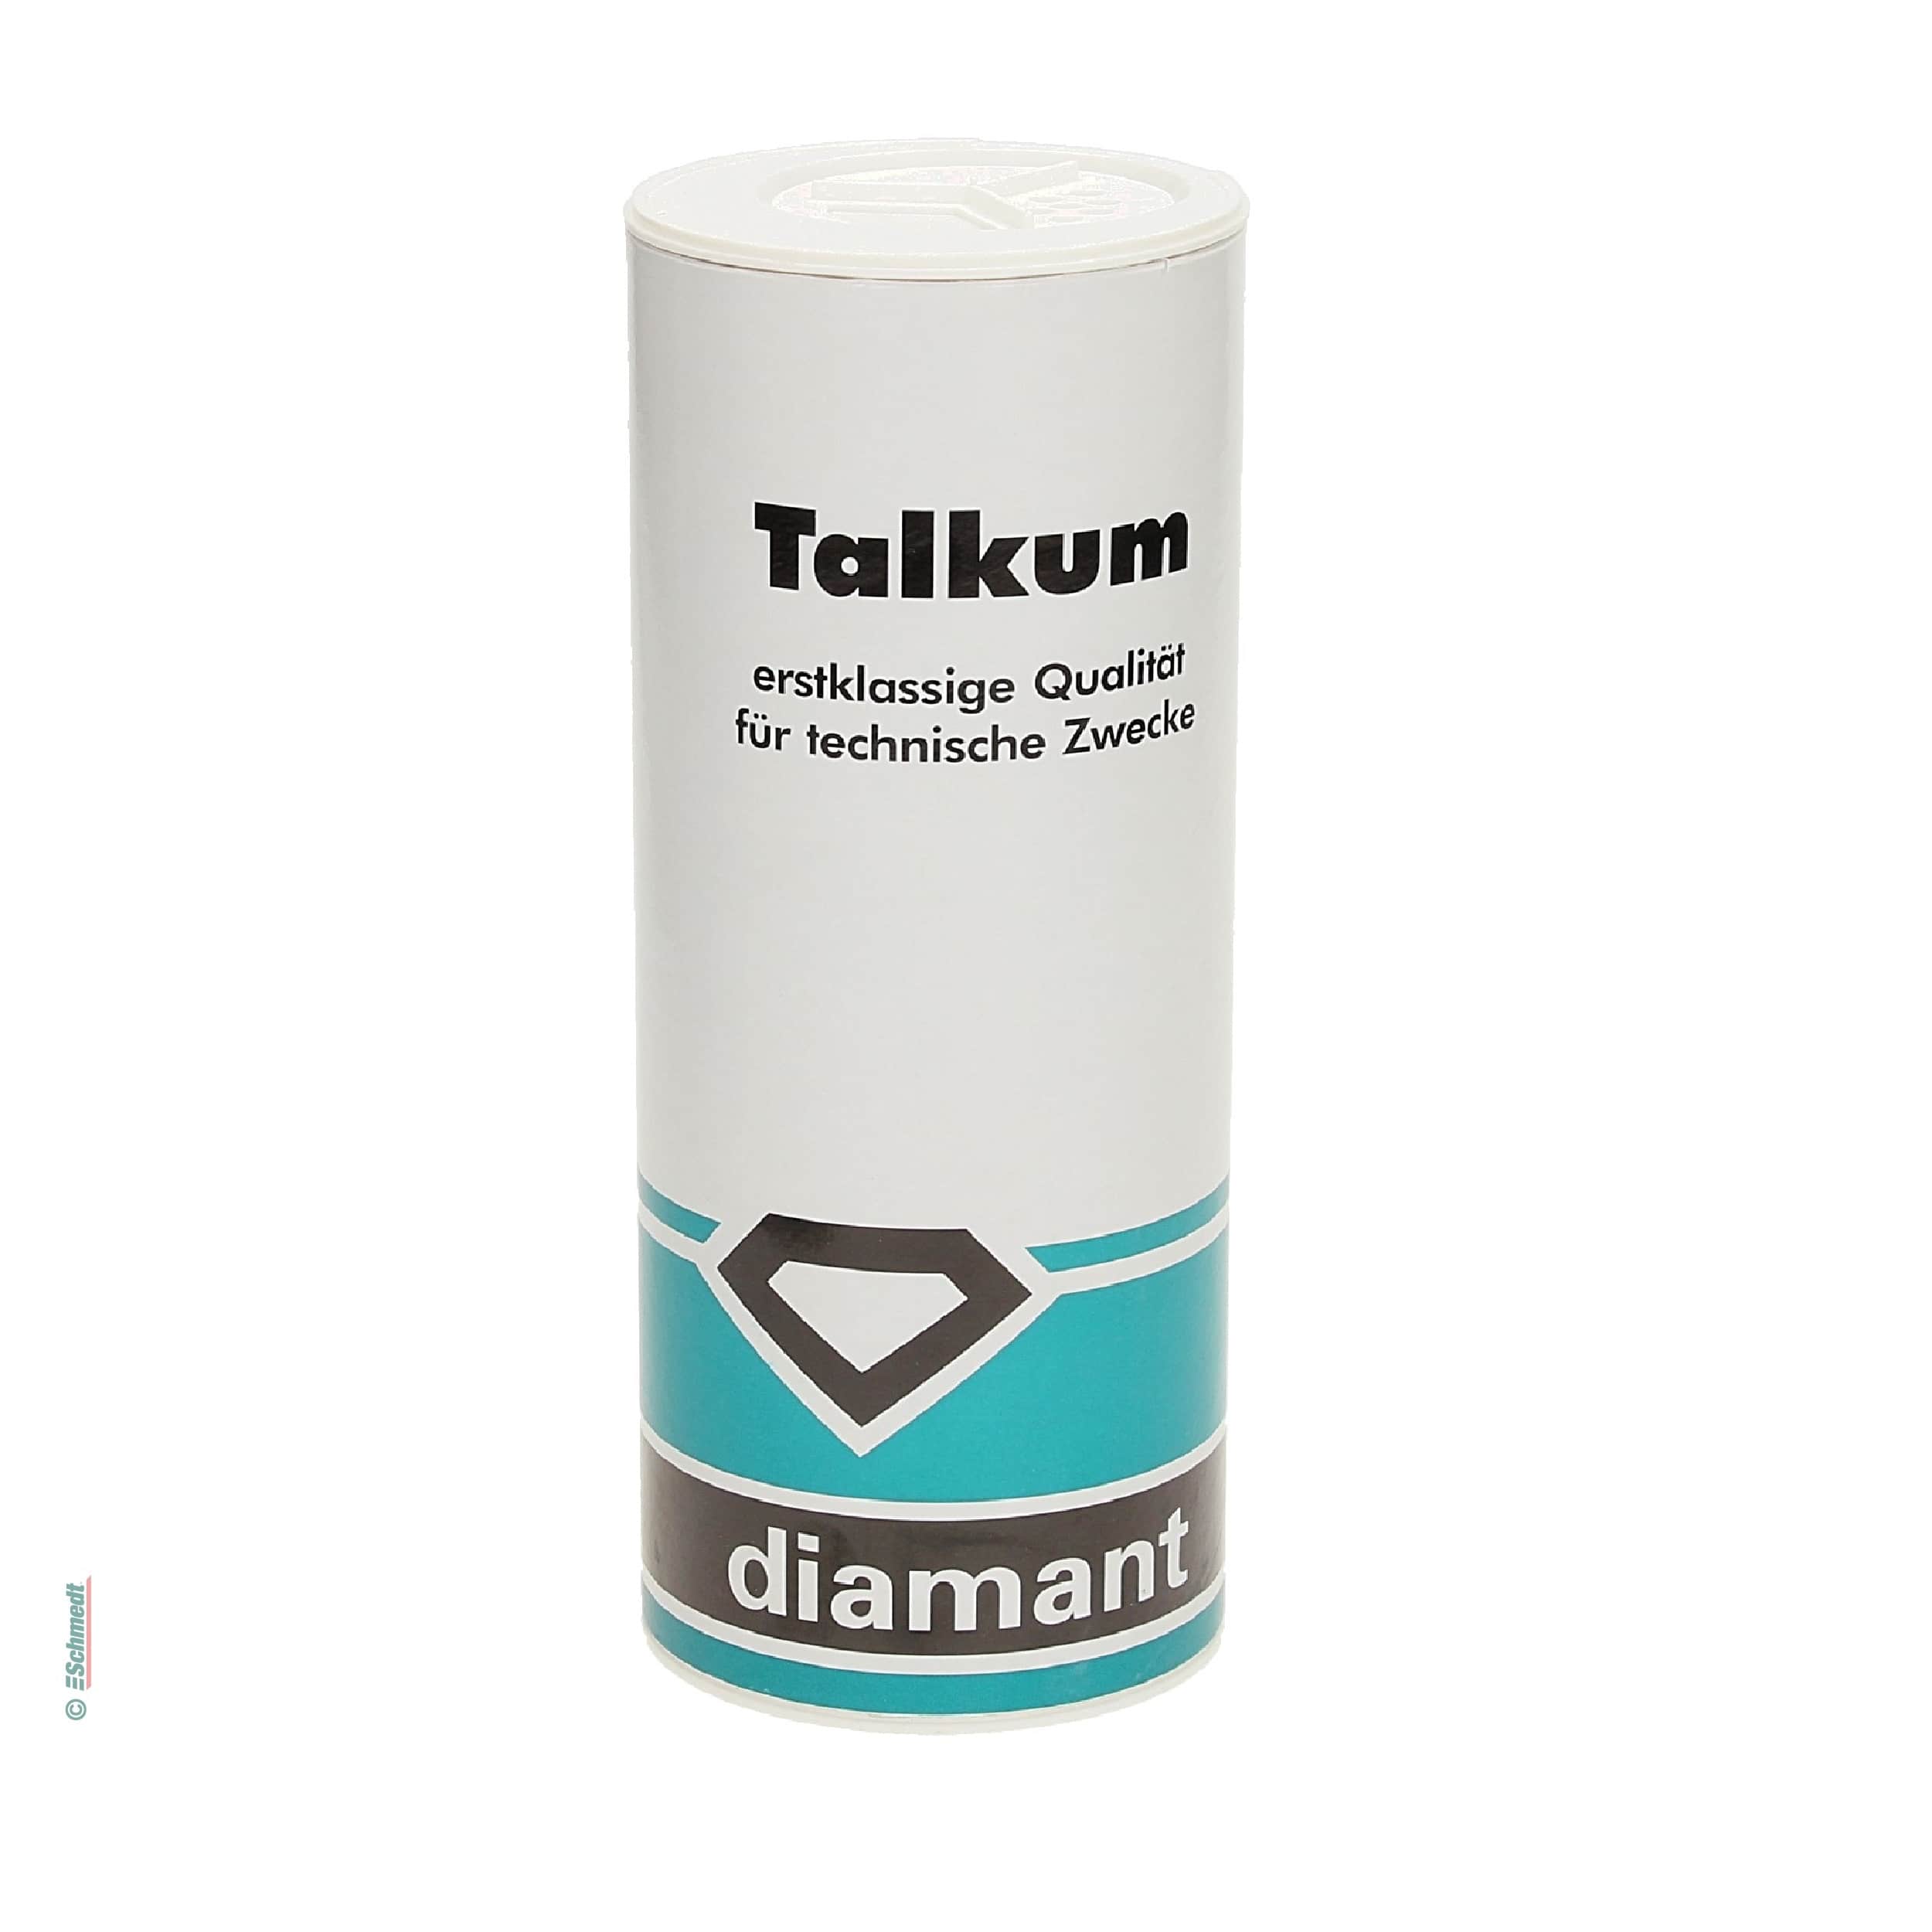 Talkum - Inhalt: 450 g - Schmier-, Trenn- und Pflegemittel für Kunststoff und Gummi, verhindert unerwünschte Verklebungen, gibt Gleiteffekt...